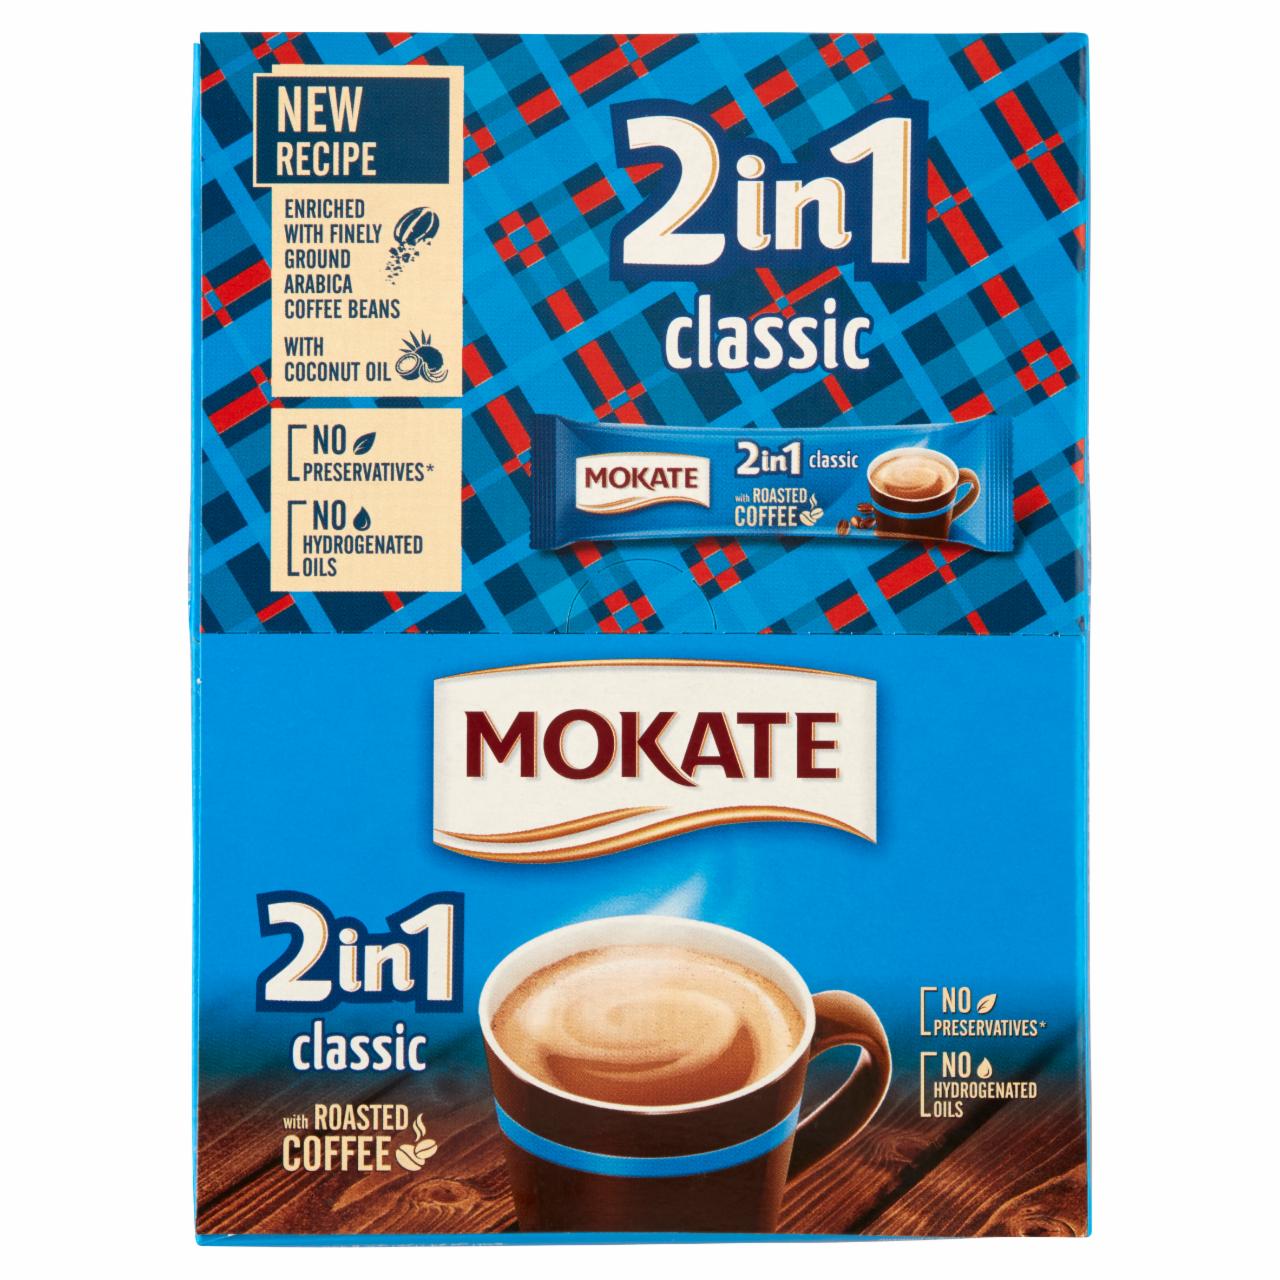 Képek - Mokate 2in1 Classic azonnal oldódó kávéspecialitás 24 x 14 g (336 g)